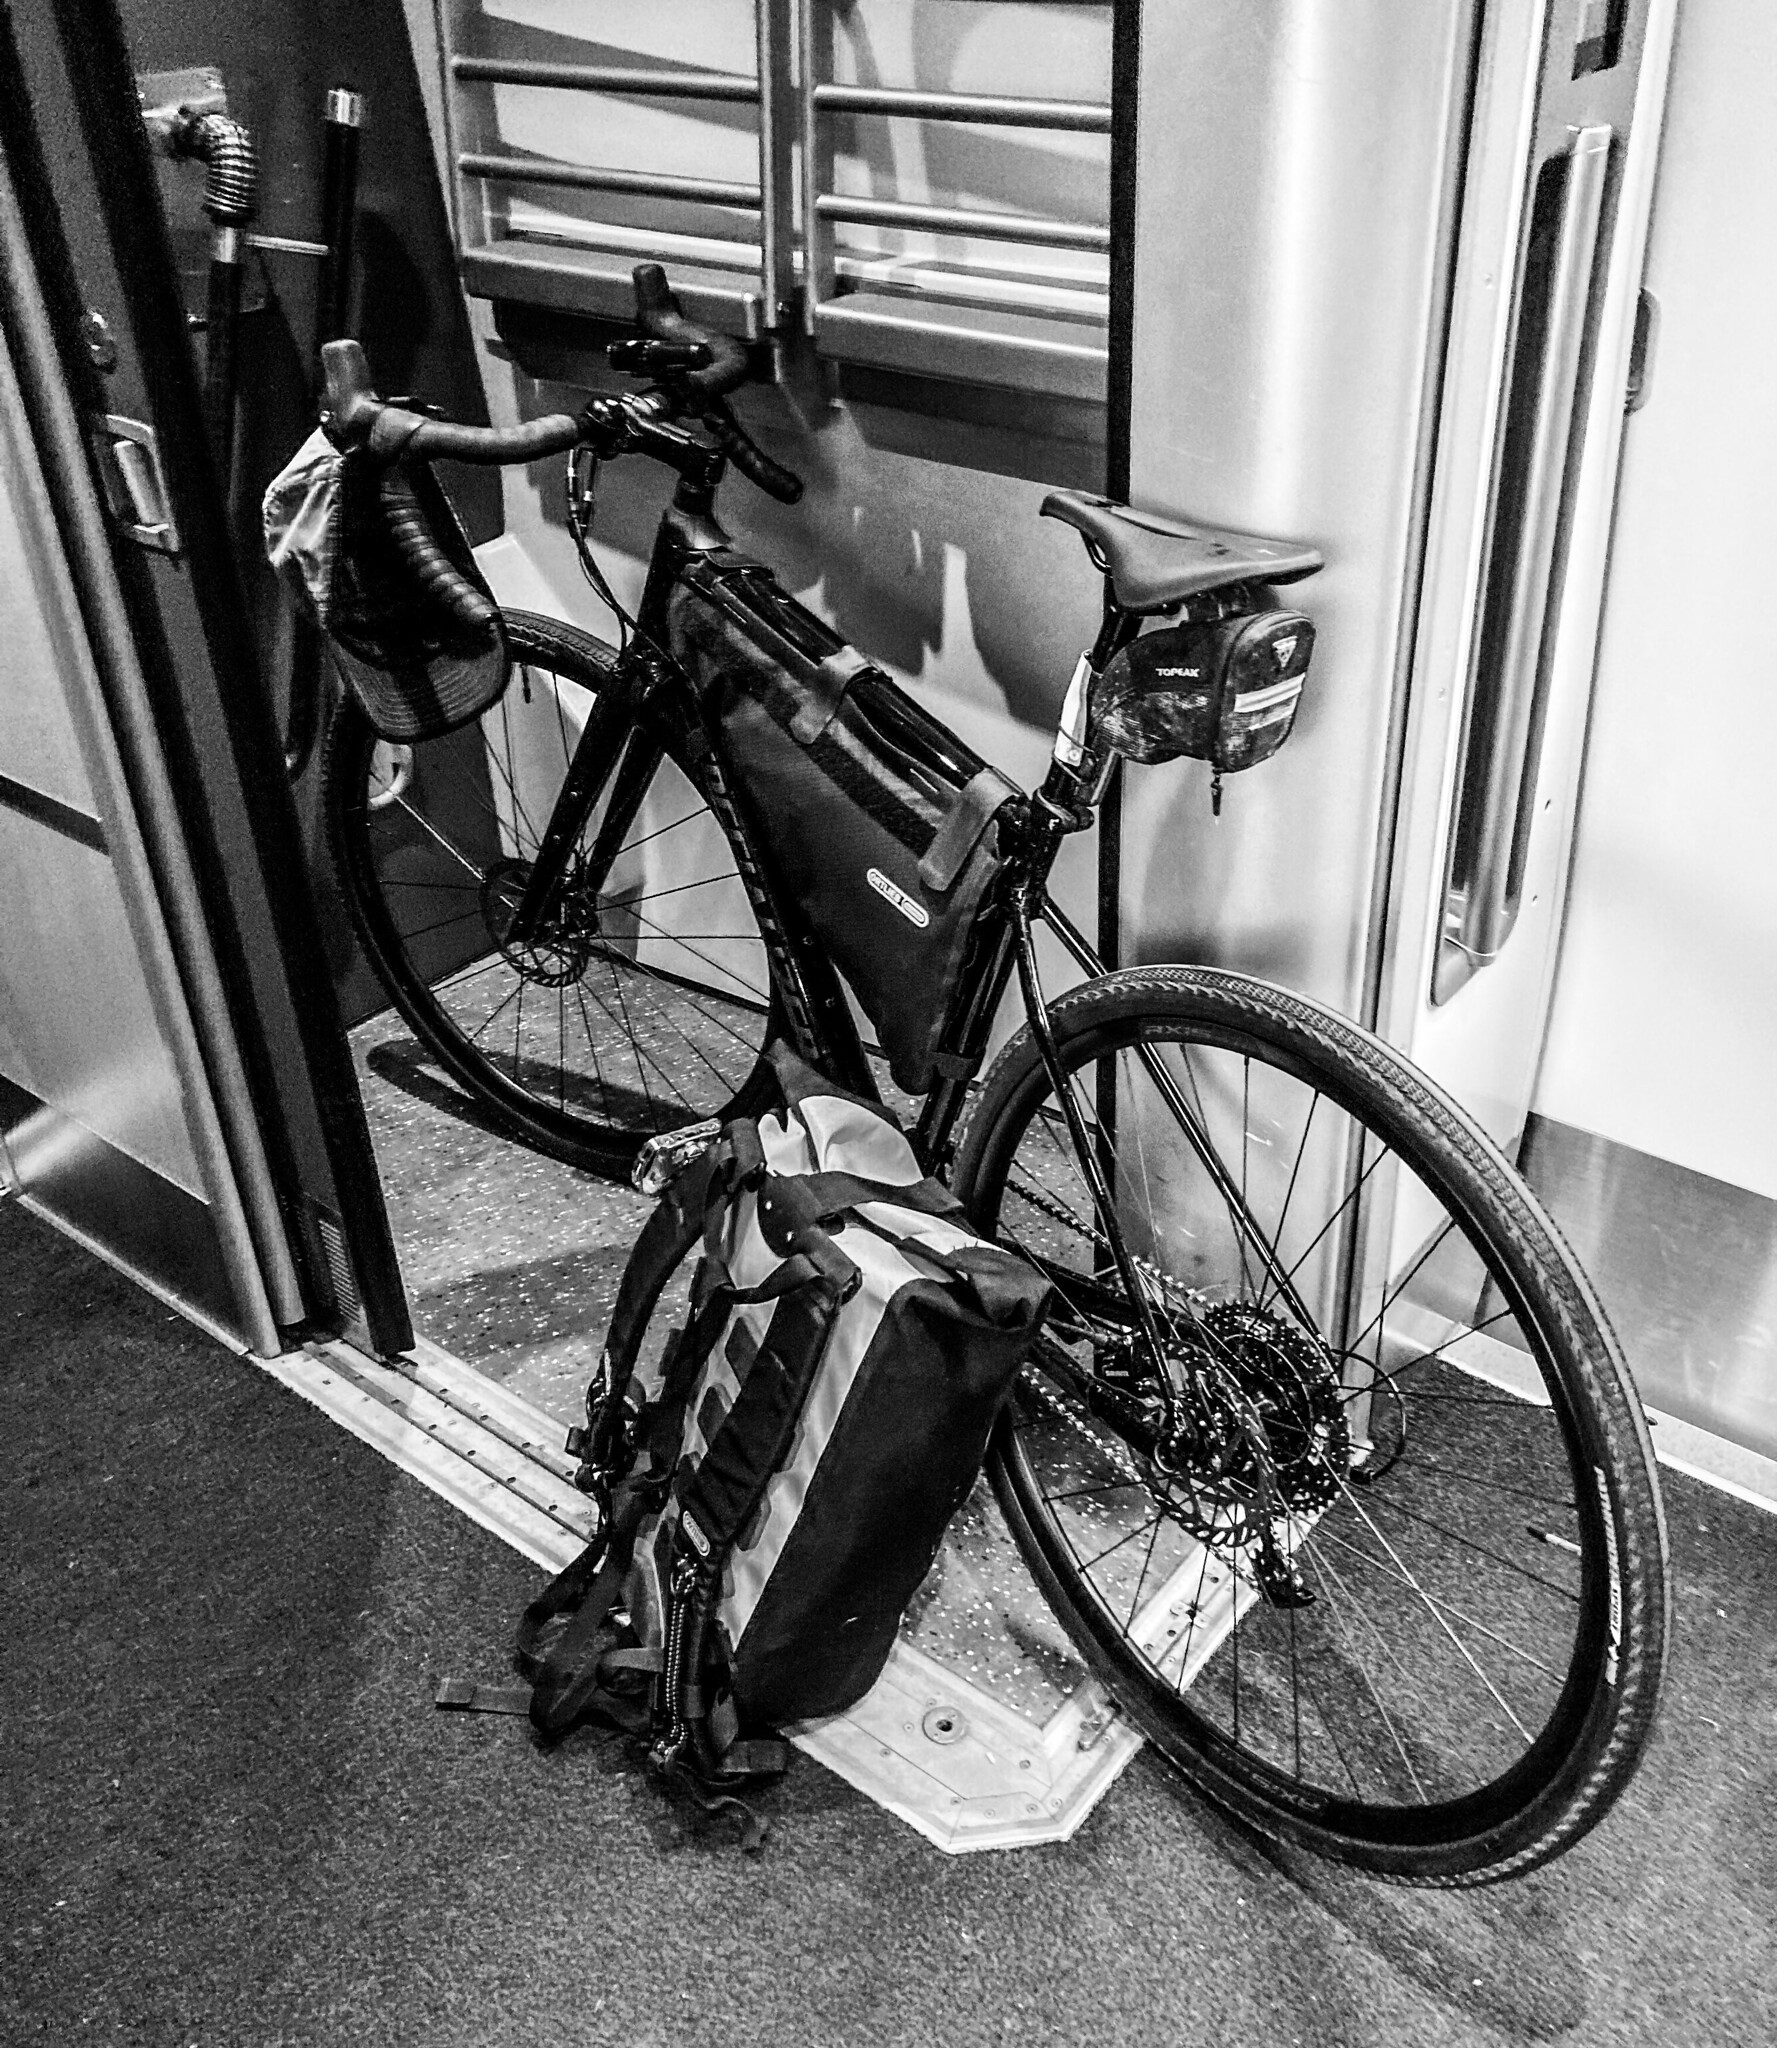 Bike on a train